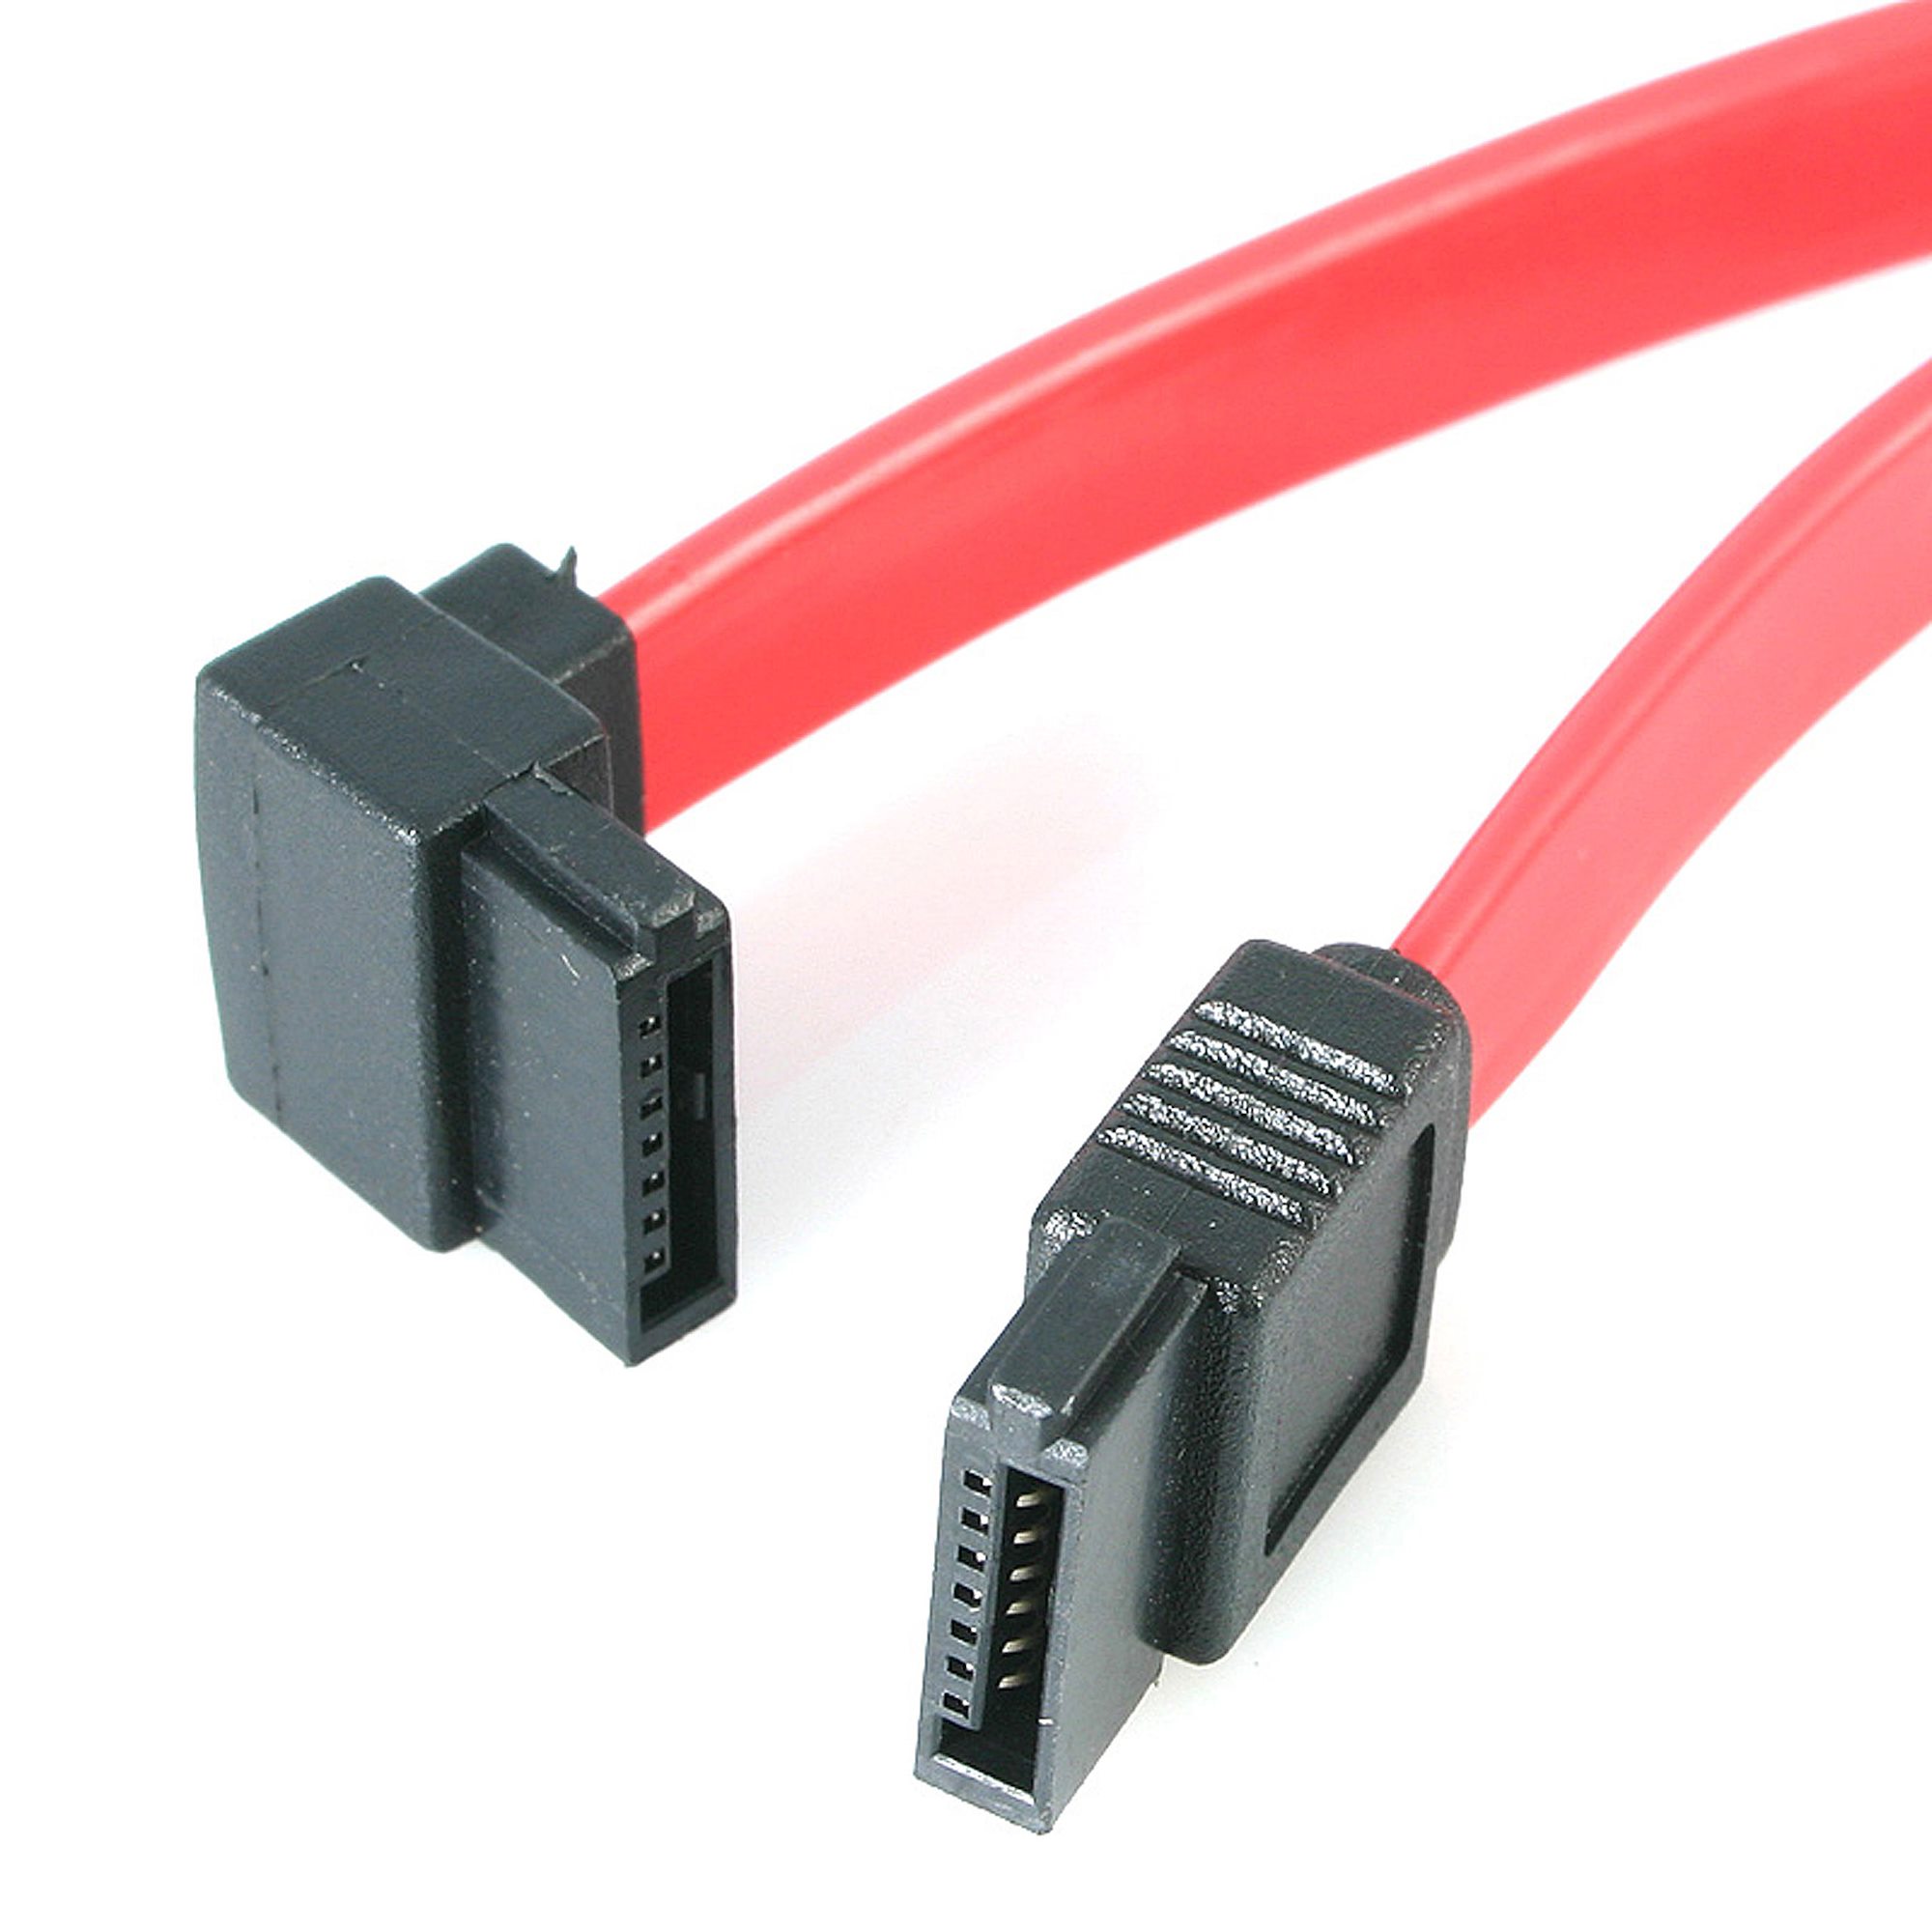 SATA Serial ATA Data set of 2 cables 22" inch 